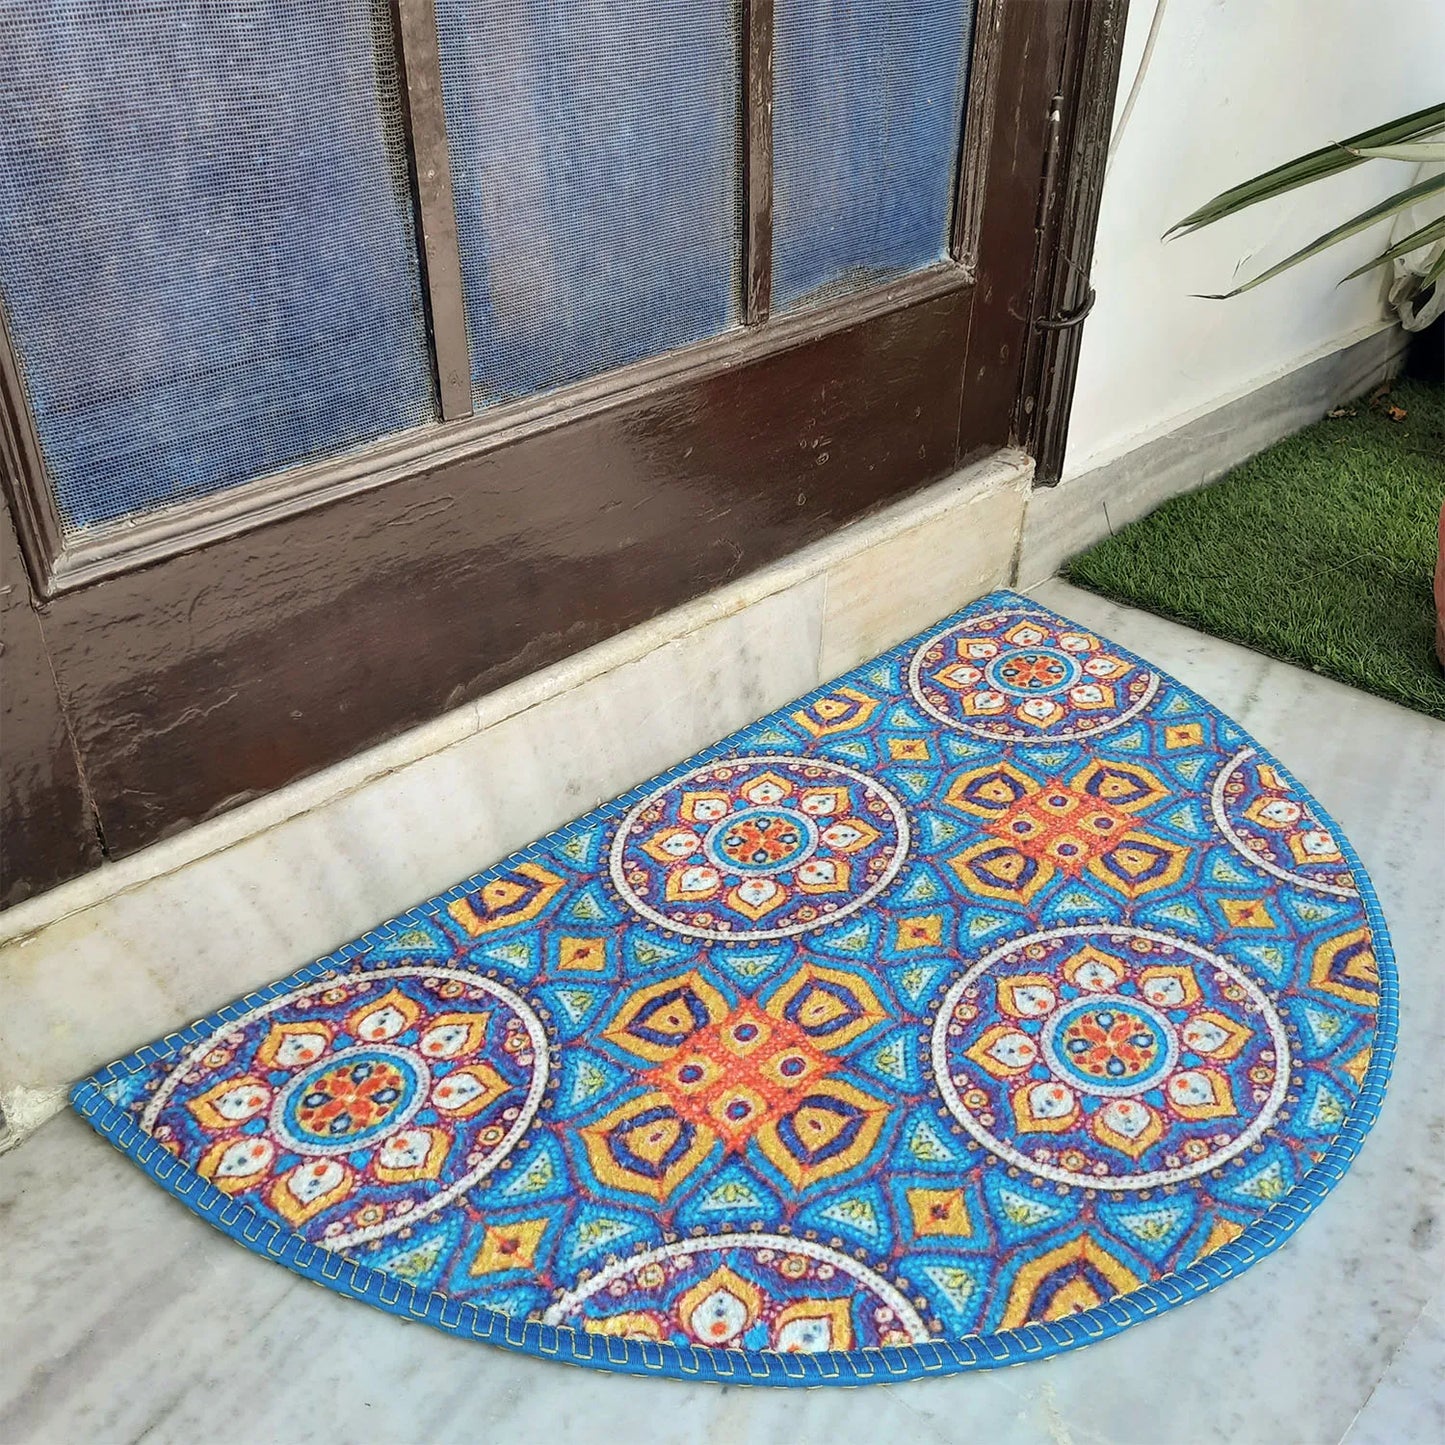 Avioni Home Floor Mats in Beautiful Moroccan Design – Anti Slip, Durable & Washable | Outdoor & Indoor